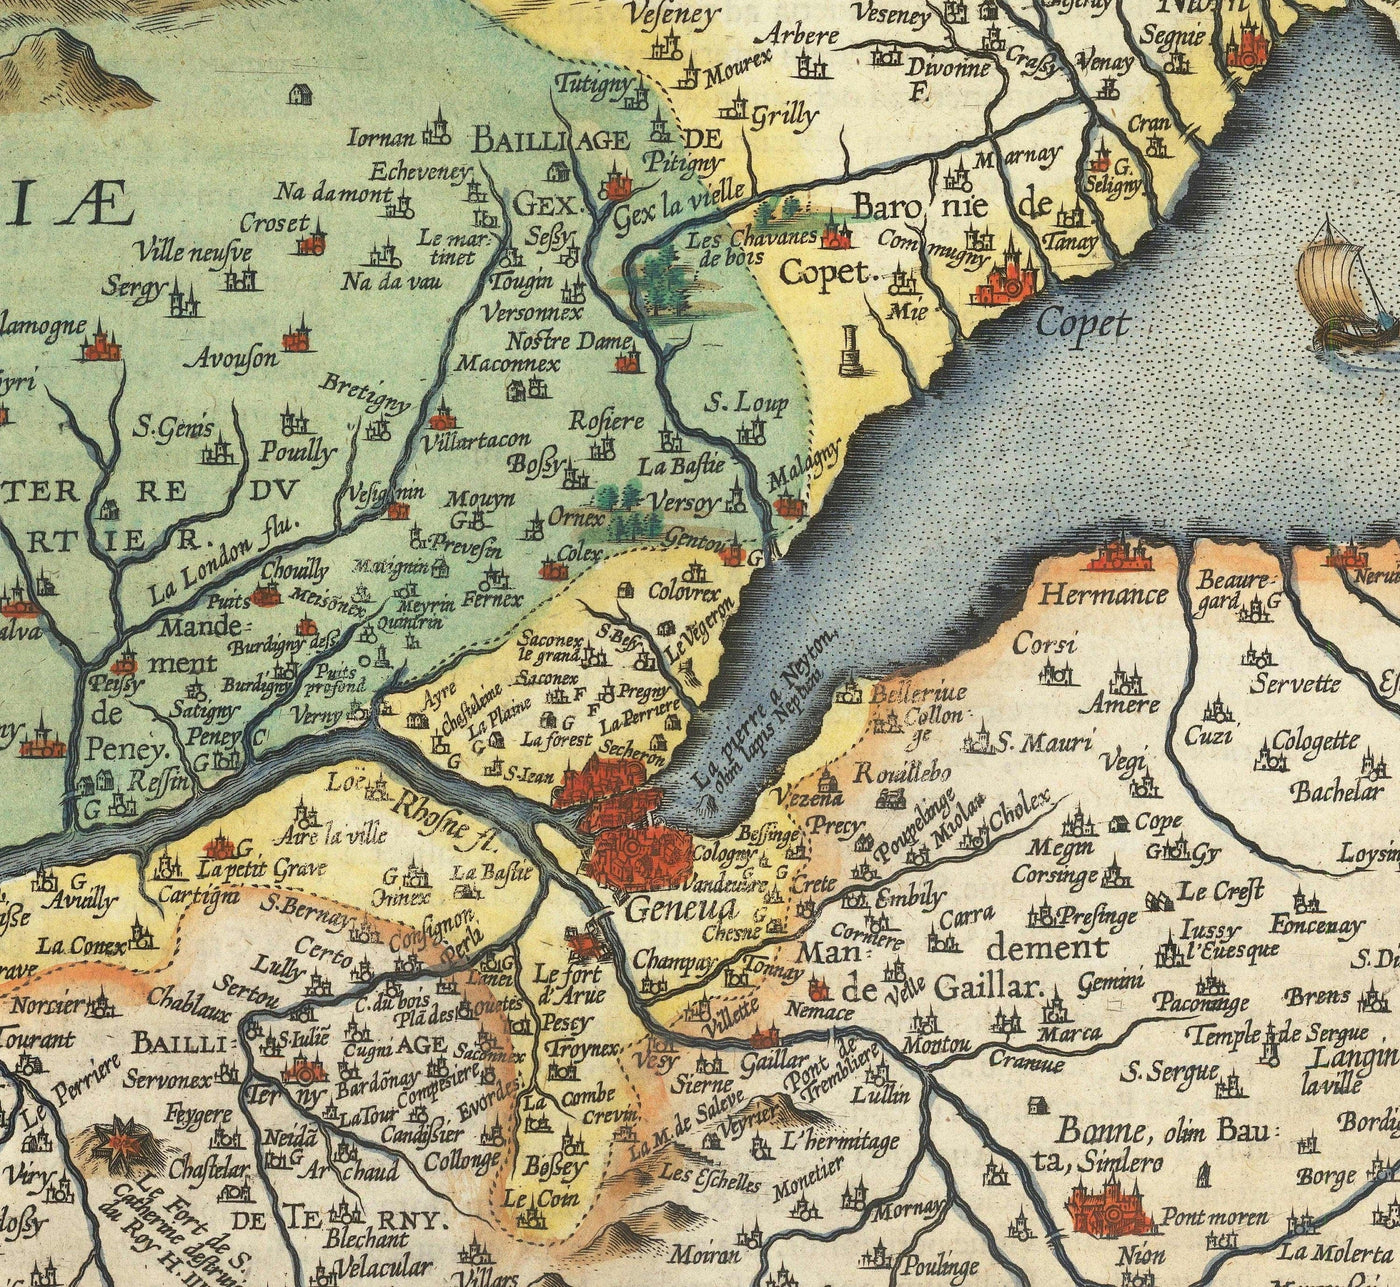 Ancienne carte du lac Léman par Abraham Ortelius, 1573 - Lausanne, Montreux, Thonon-les-Bains, Evian, Nyon, Morges